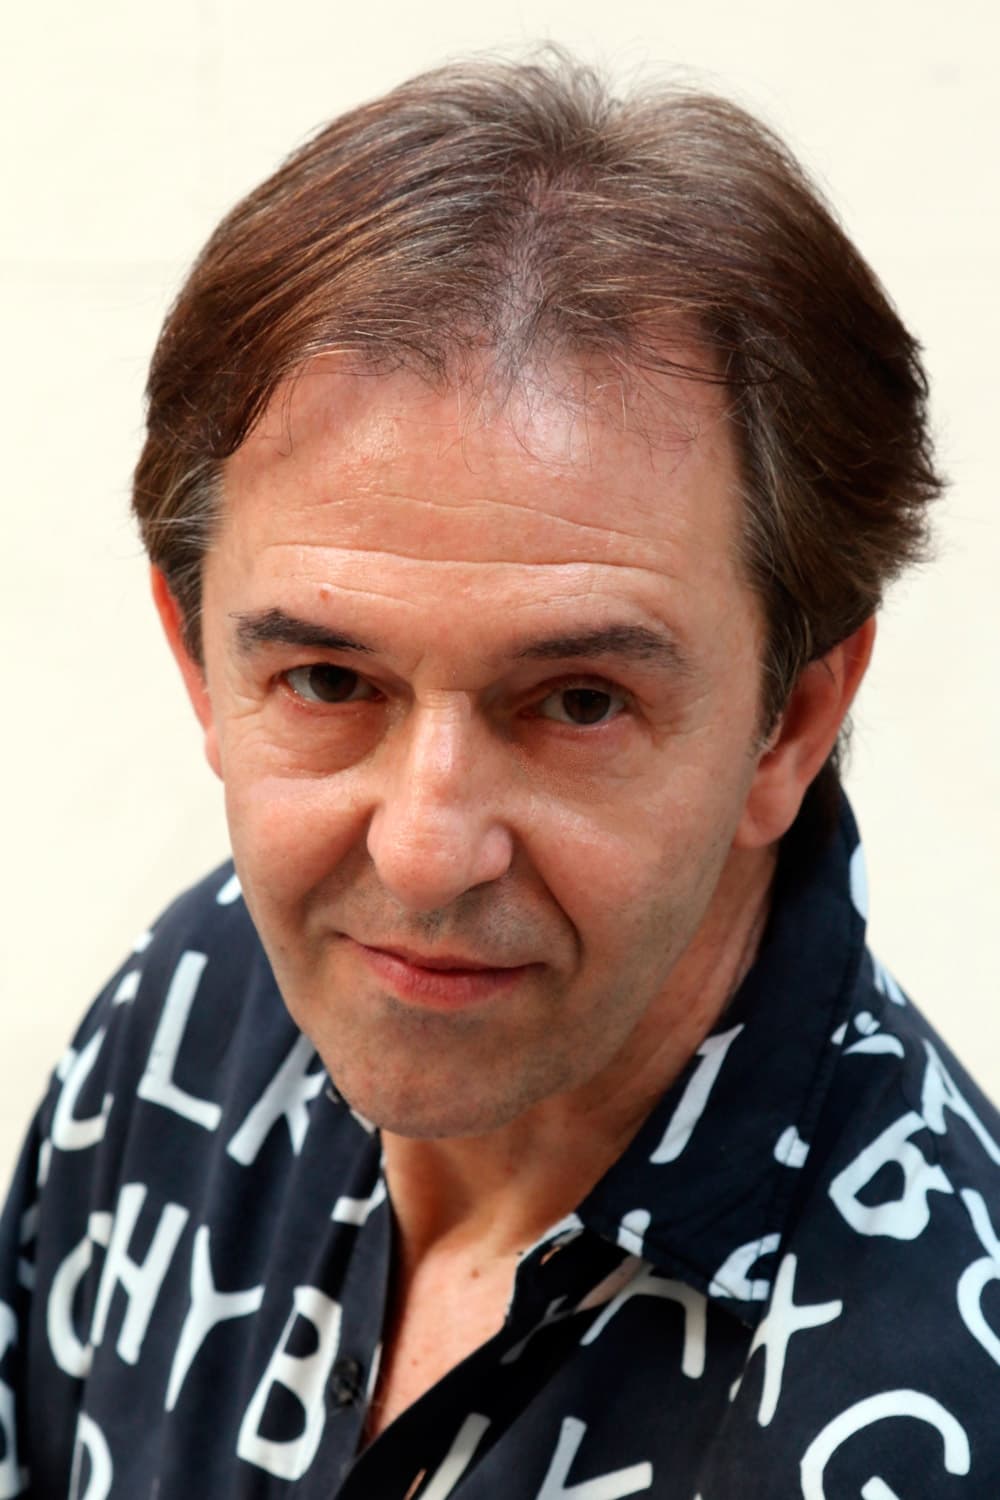 Antonio Cabello